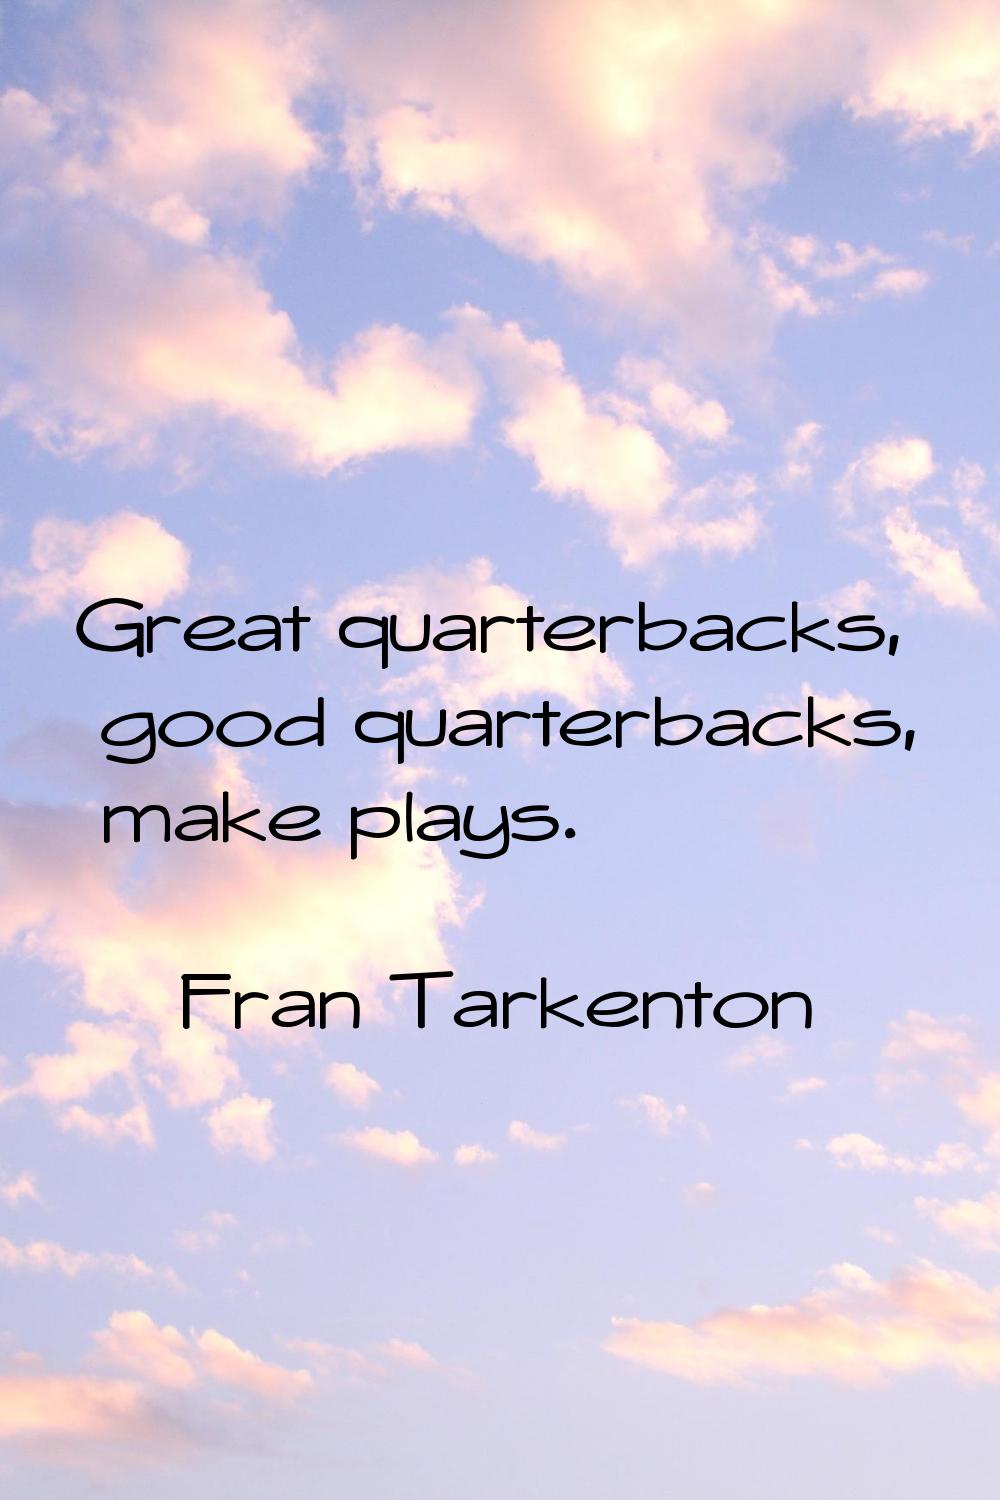 Great quarterbacks, good quarterbacks, make plays.